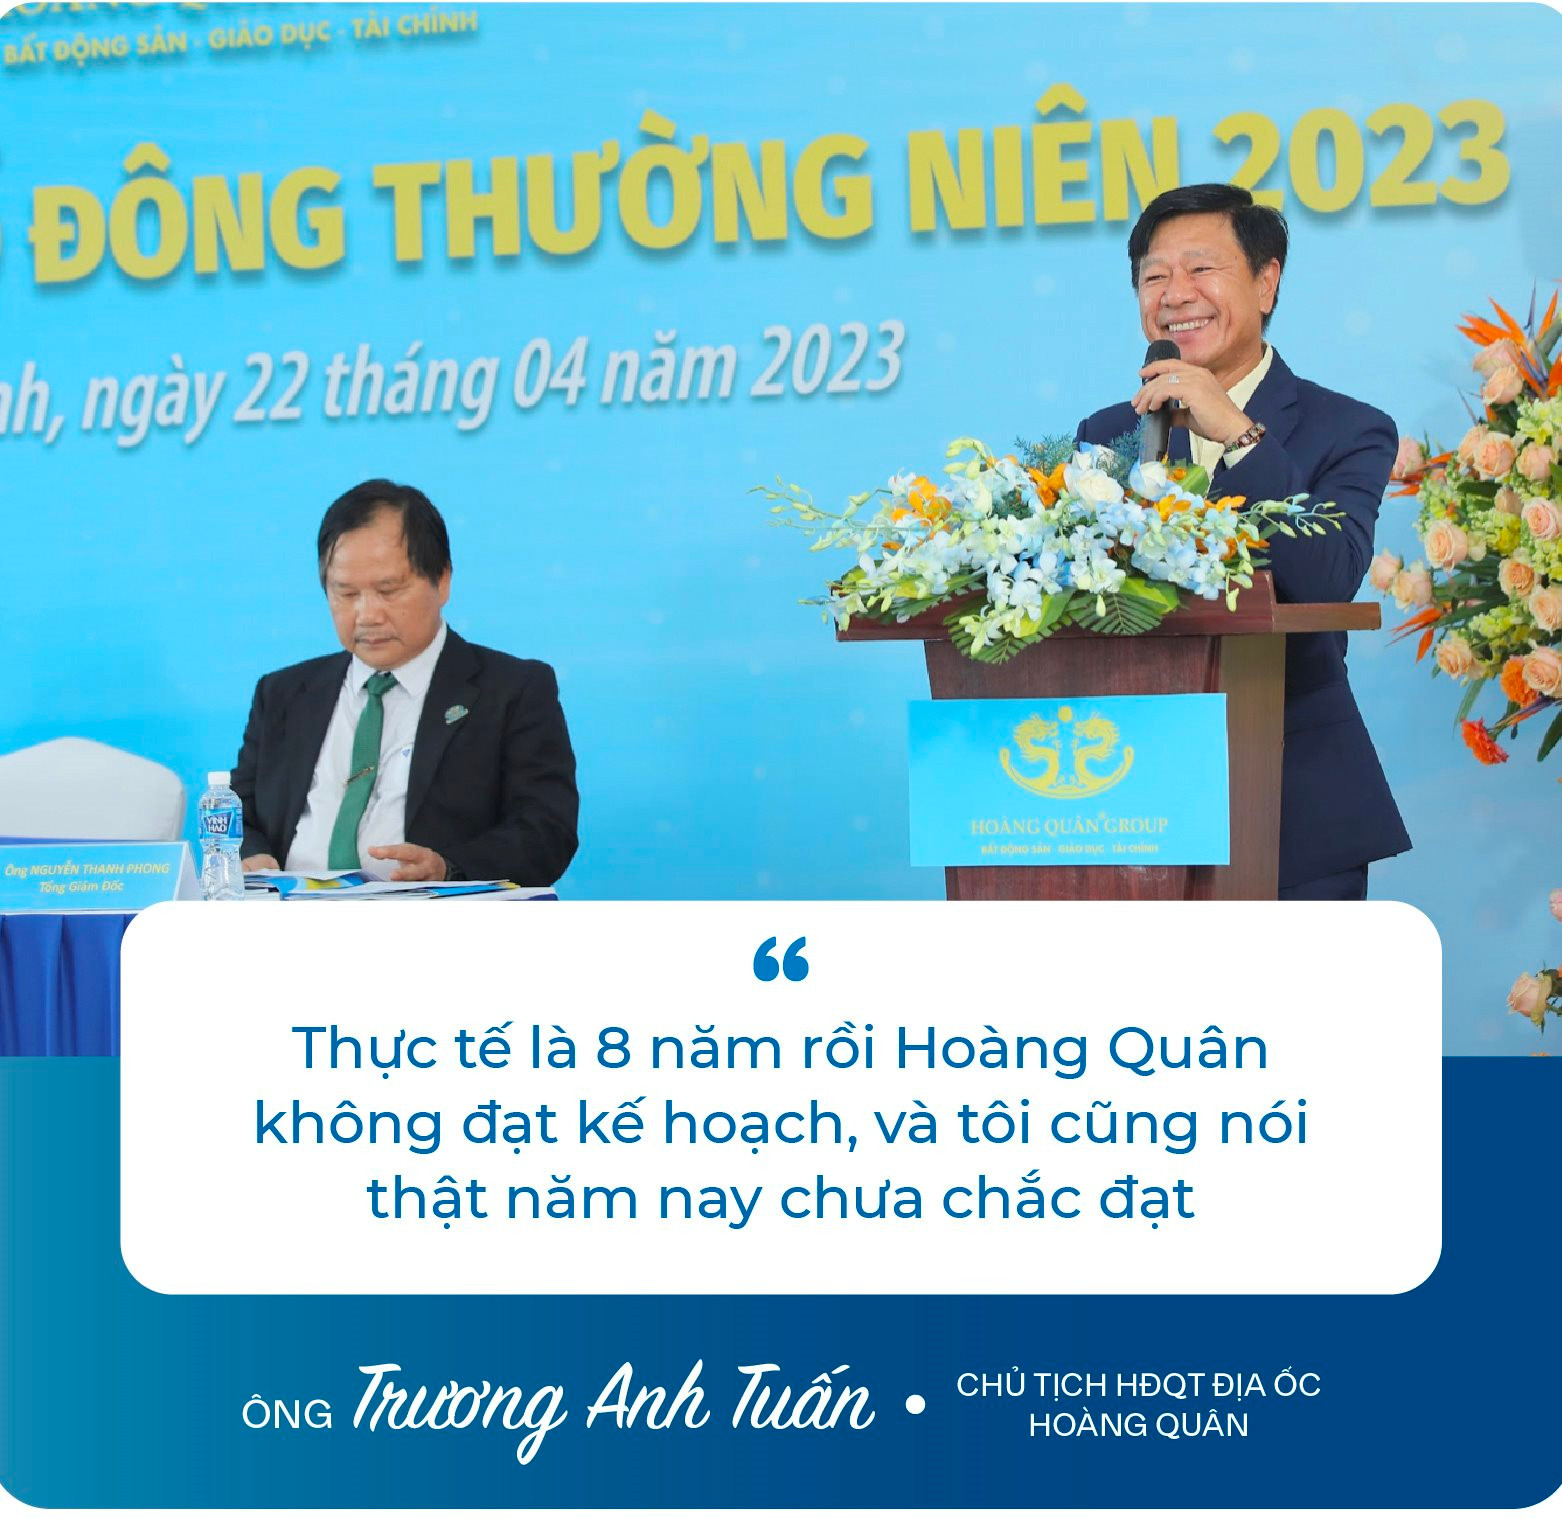 Chủ tịch Trương Anh Tuấn: ﻿“8 năm rồi Hoàng Quân (HQC) không đạt kế hoạch, và tôi cũng nói thật năm nay chưa chắc đạt” - Ảnh 6.